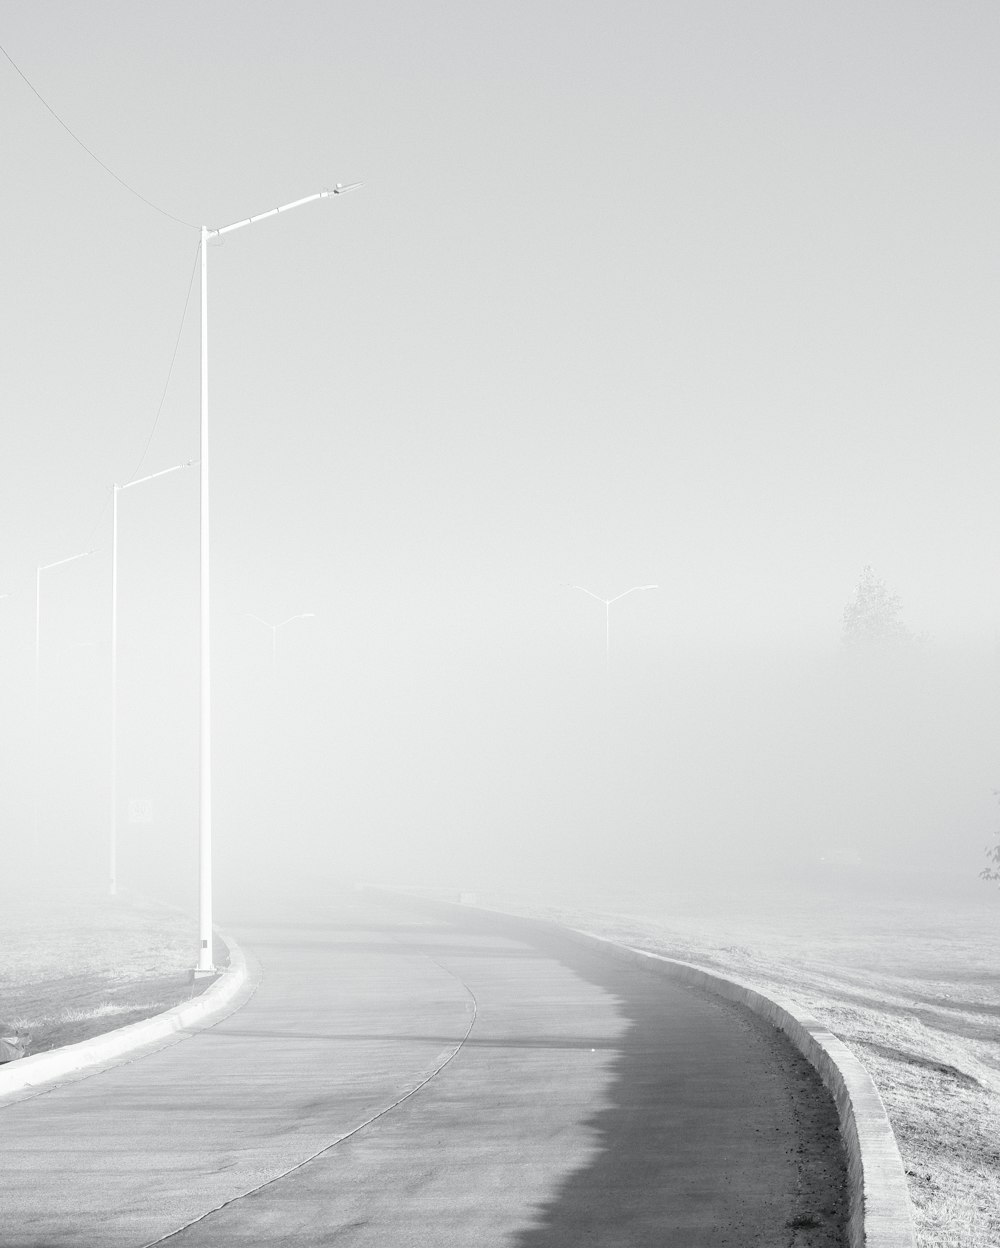 uma foto em preto e branco de uma estrada nebulosa